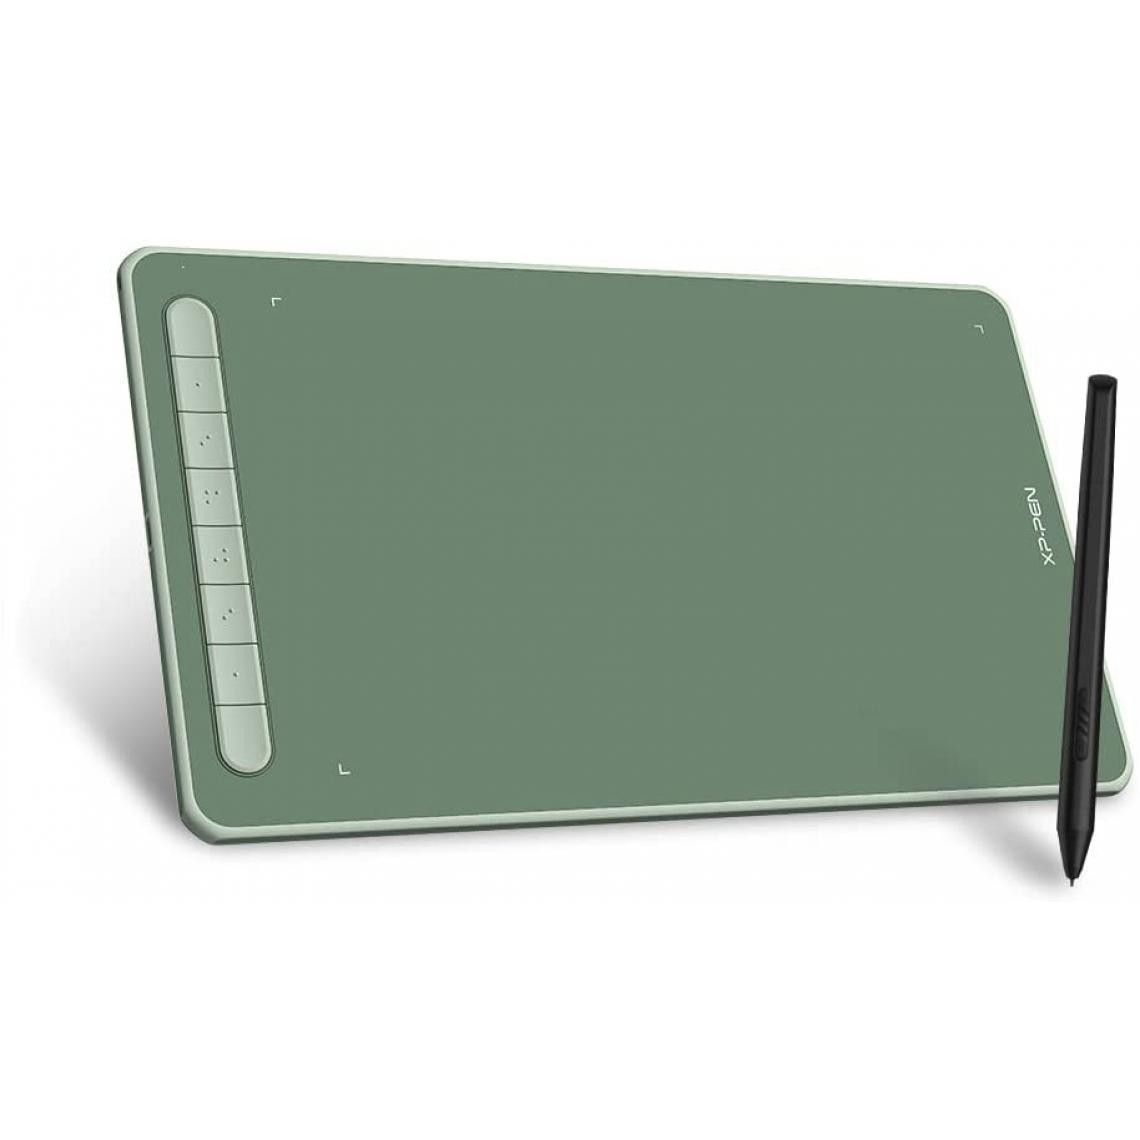 Xp-Pen - XPPen Deco L Tablette Graphique 10x6 Pouces avec Stylet X3 pour Dessin Digital, Animation, Etudes à Distance ou Télétravail Compatible avec Windows/Mac/Android/Chrome OS/Linux (Vert) - Tablette Graphique